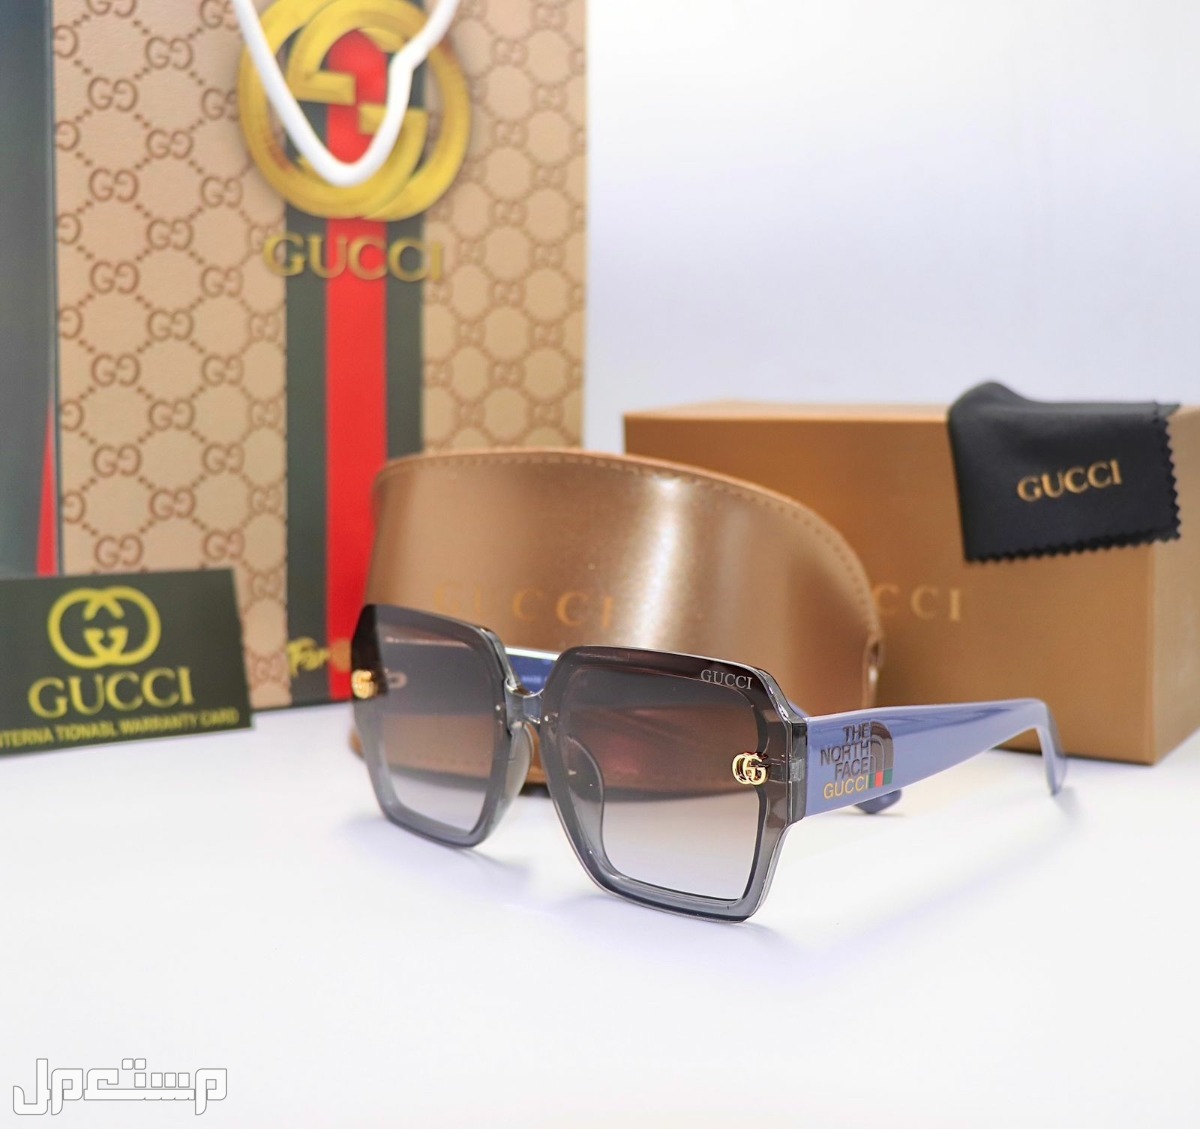 جديدنا🤩 غوتشي سائية درجة اولى 🤩🎁  نظارات غوتشي 🕶 نسائية 👩🏼 مع كافة ملحقاتها غوتشي